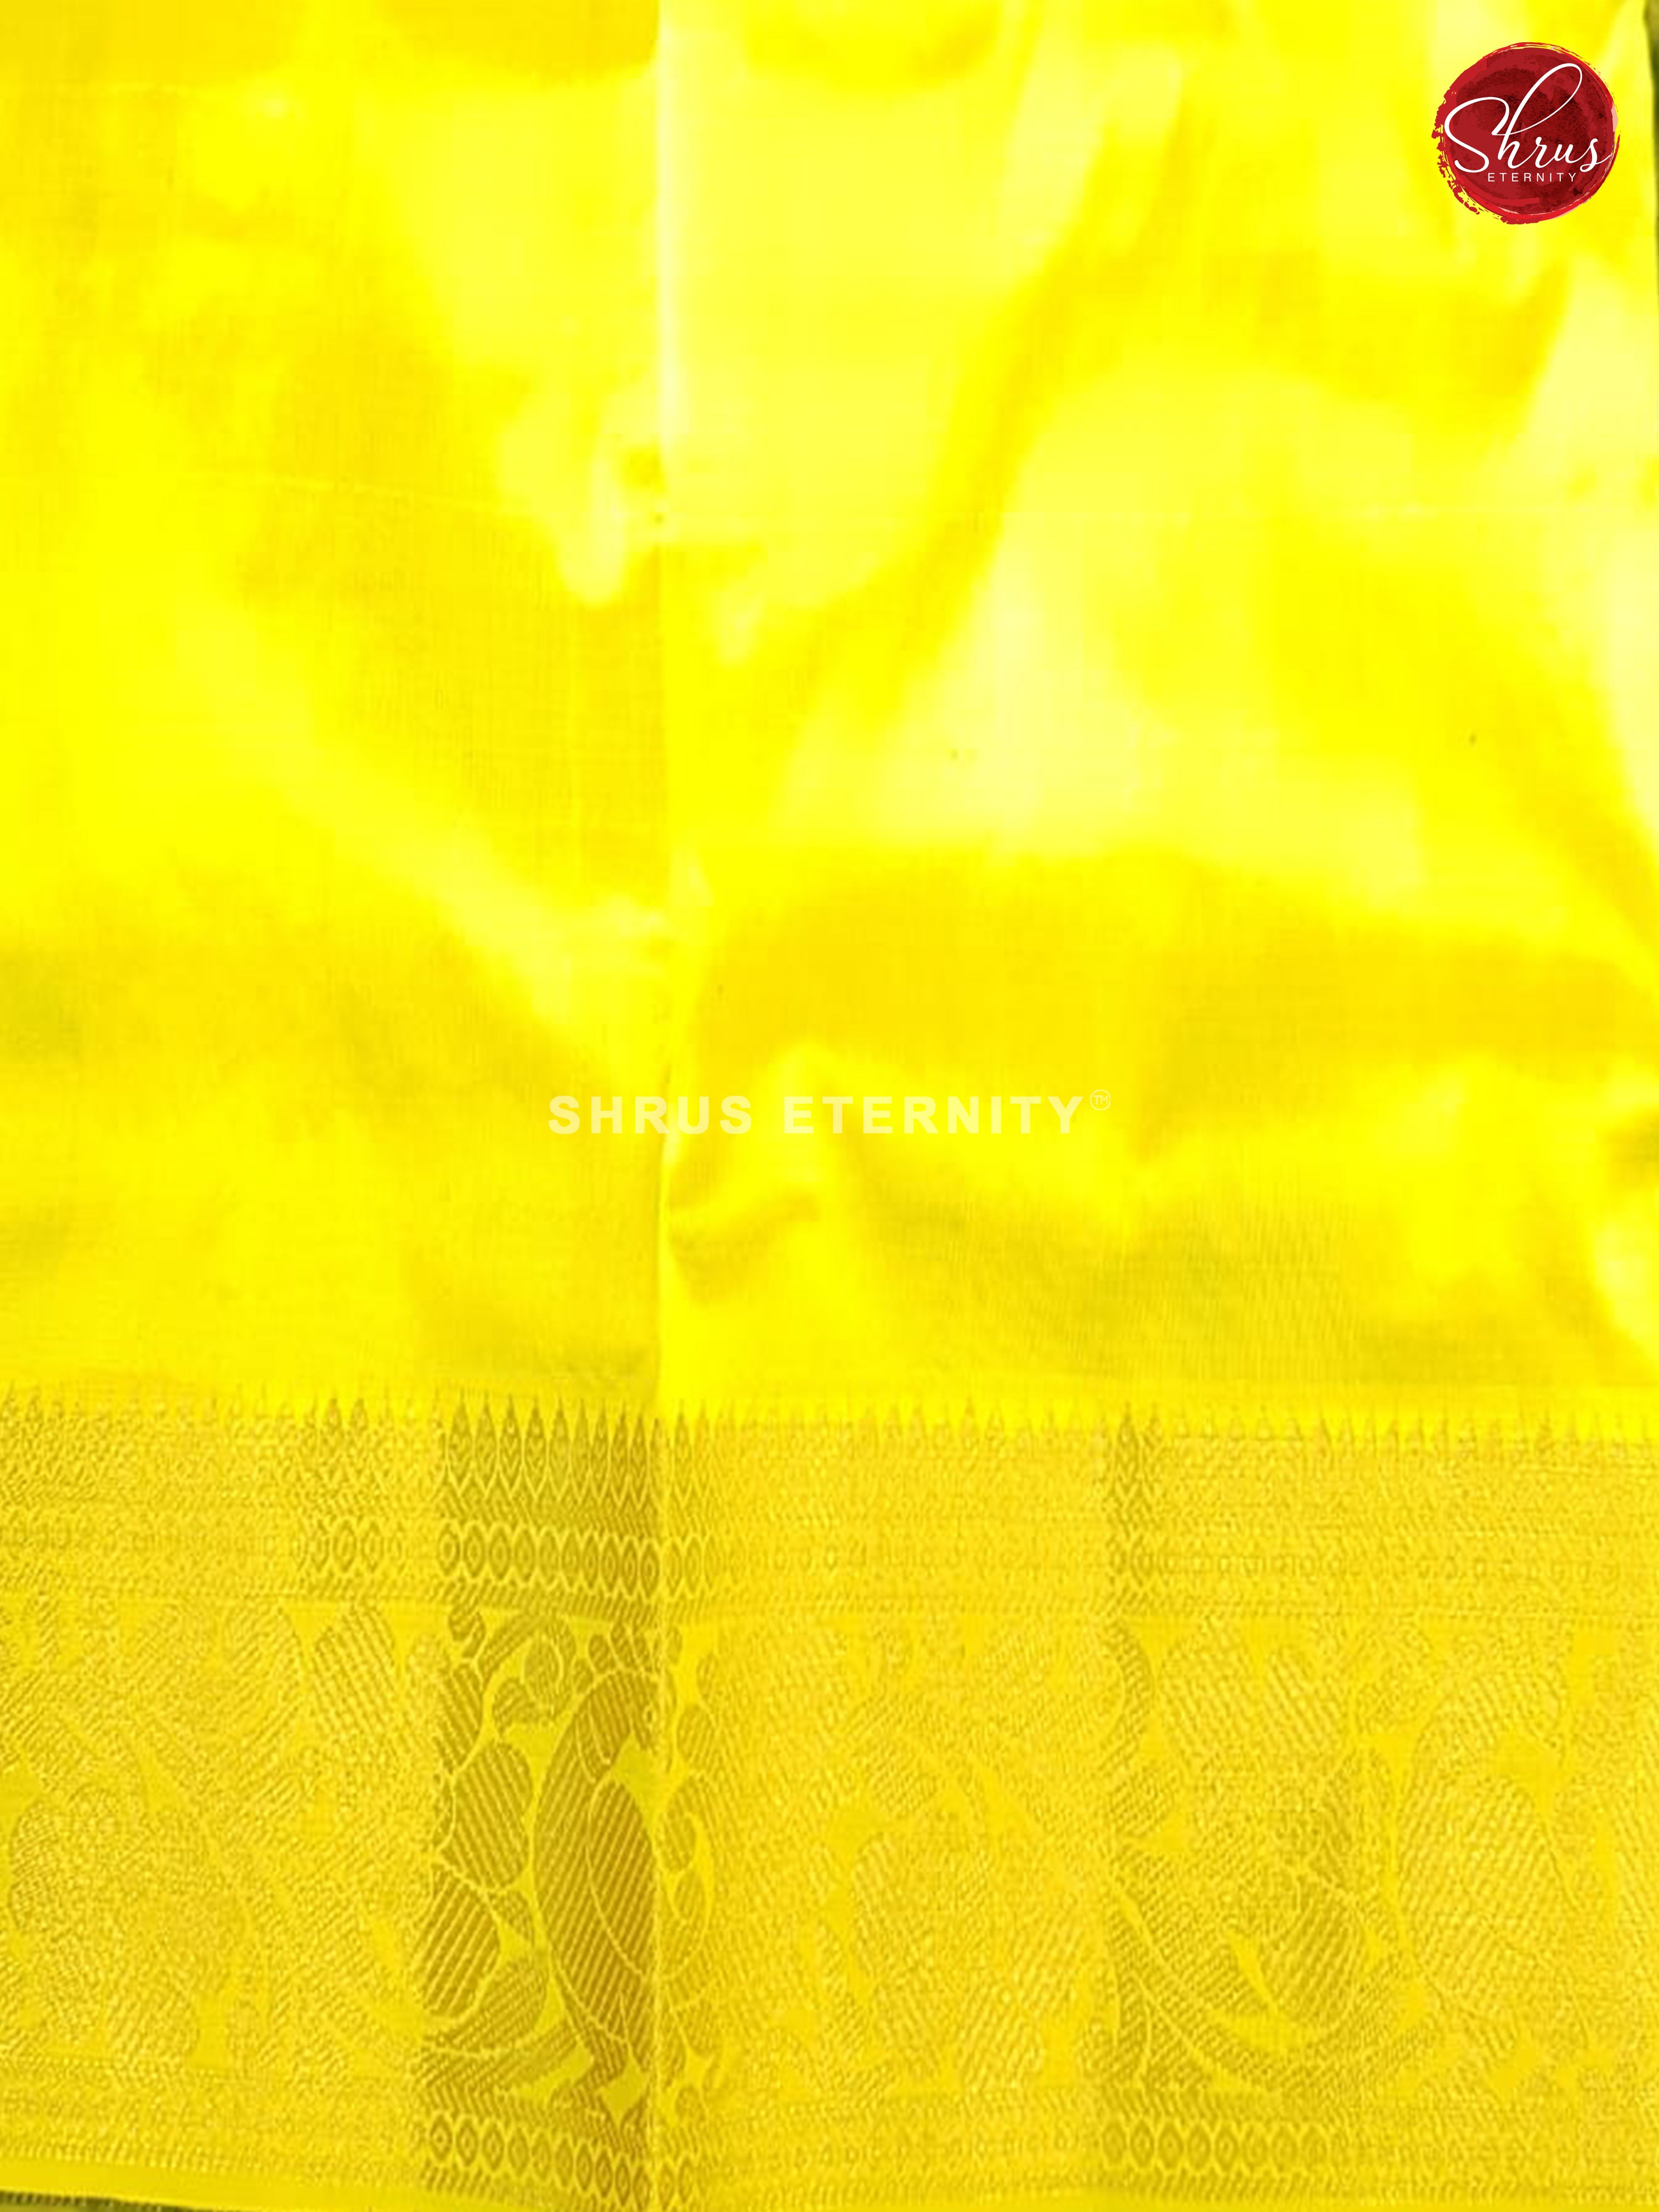 Yellow & Dark Green - Pattu Pavadai 0-2 Years - Shop on ShrusEternity.com